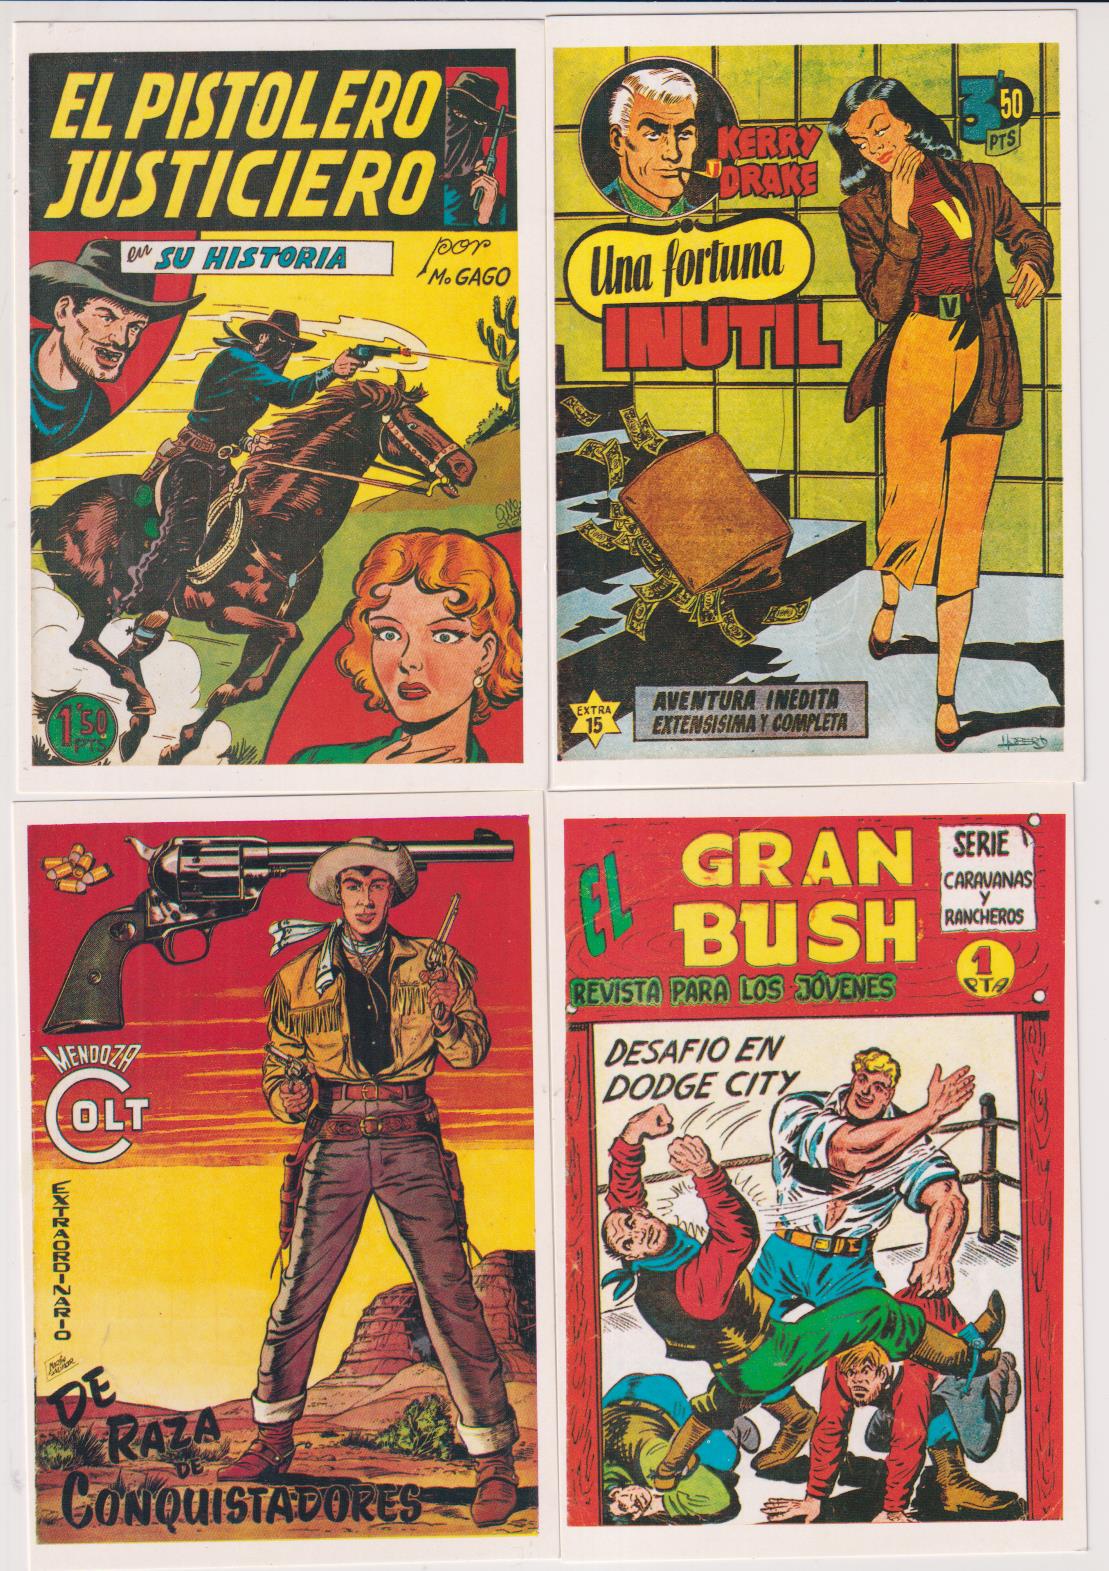 Lote de 4 Fichas de nº 1. El Pistolero justiciero, Serie Extra, Mendoza Colt Almanaque y Gran Busch